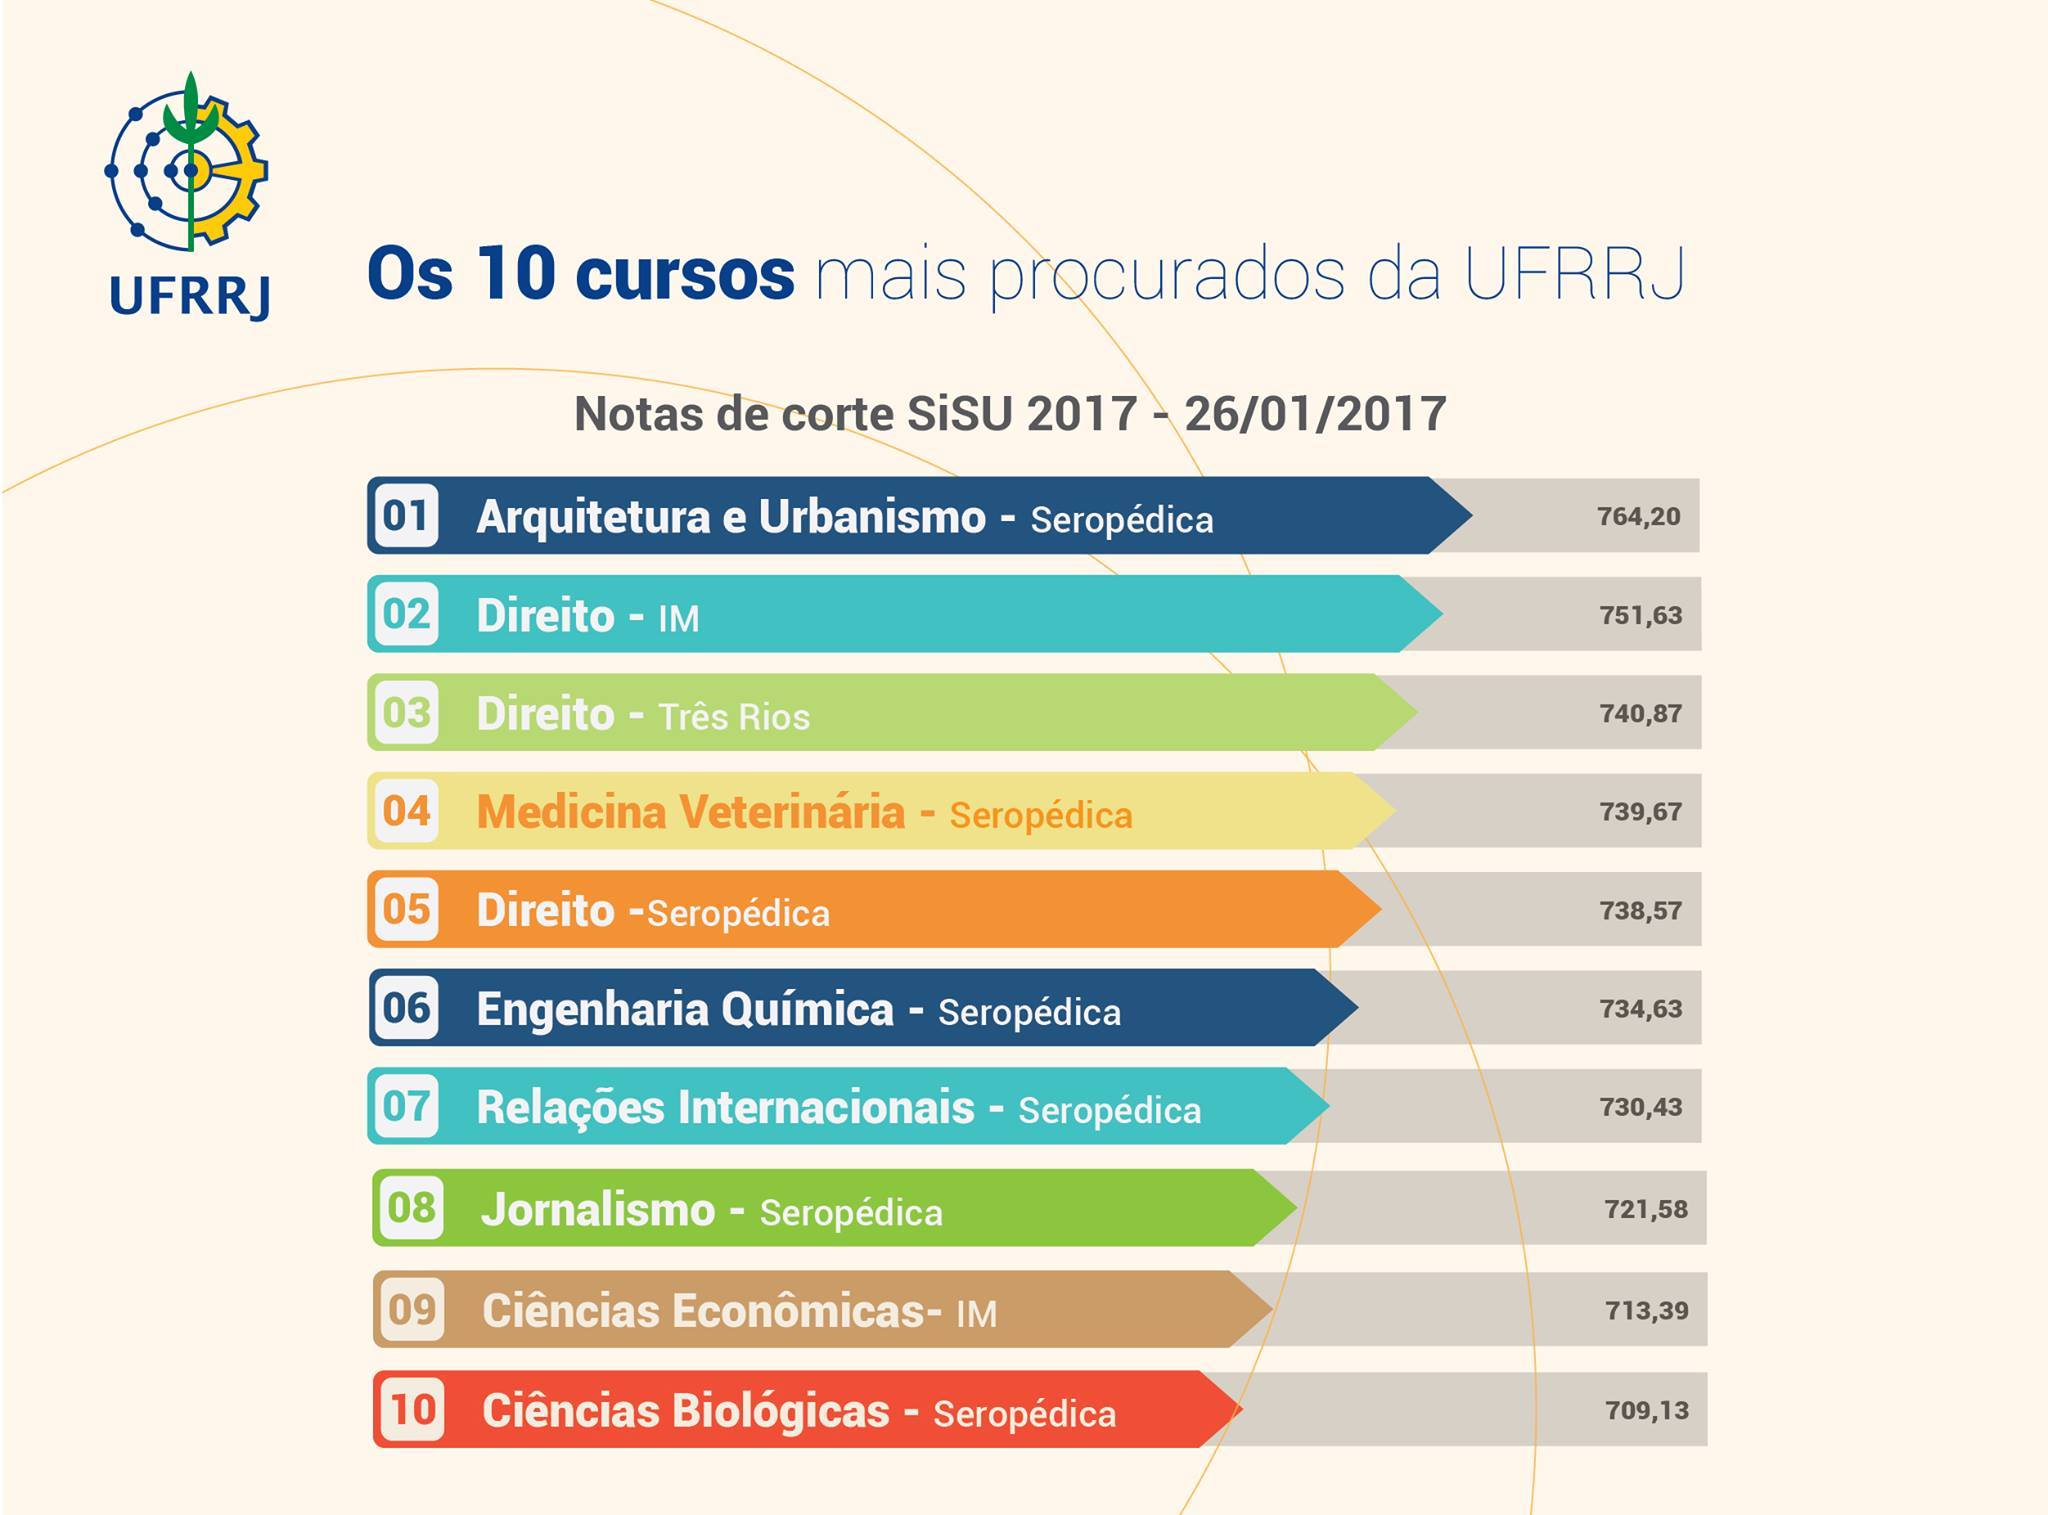 Diretoria de Relações Internacionais - UFMG - Você sabe quais os cursos com  as maiores notas de corte para ingresso no primeiro semestre de 2020 na UFMG?  A Universidade Federal de Minas